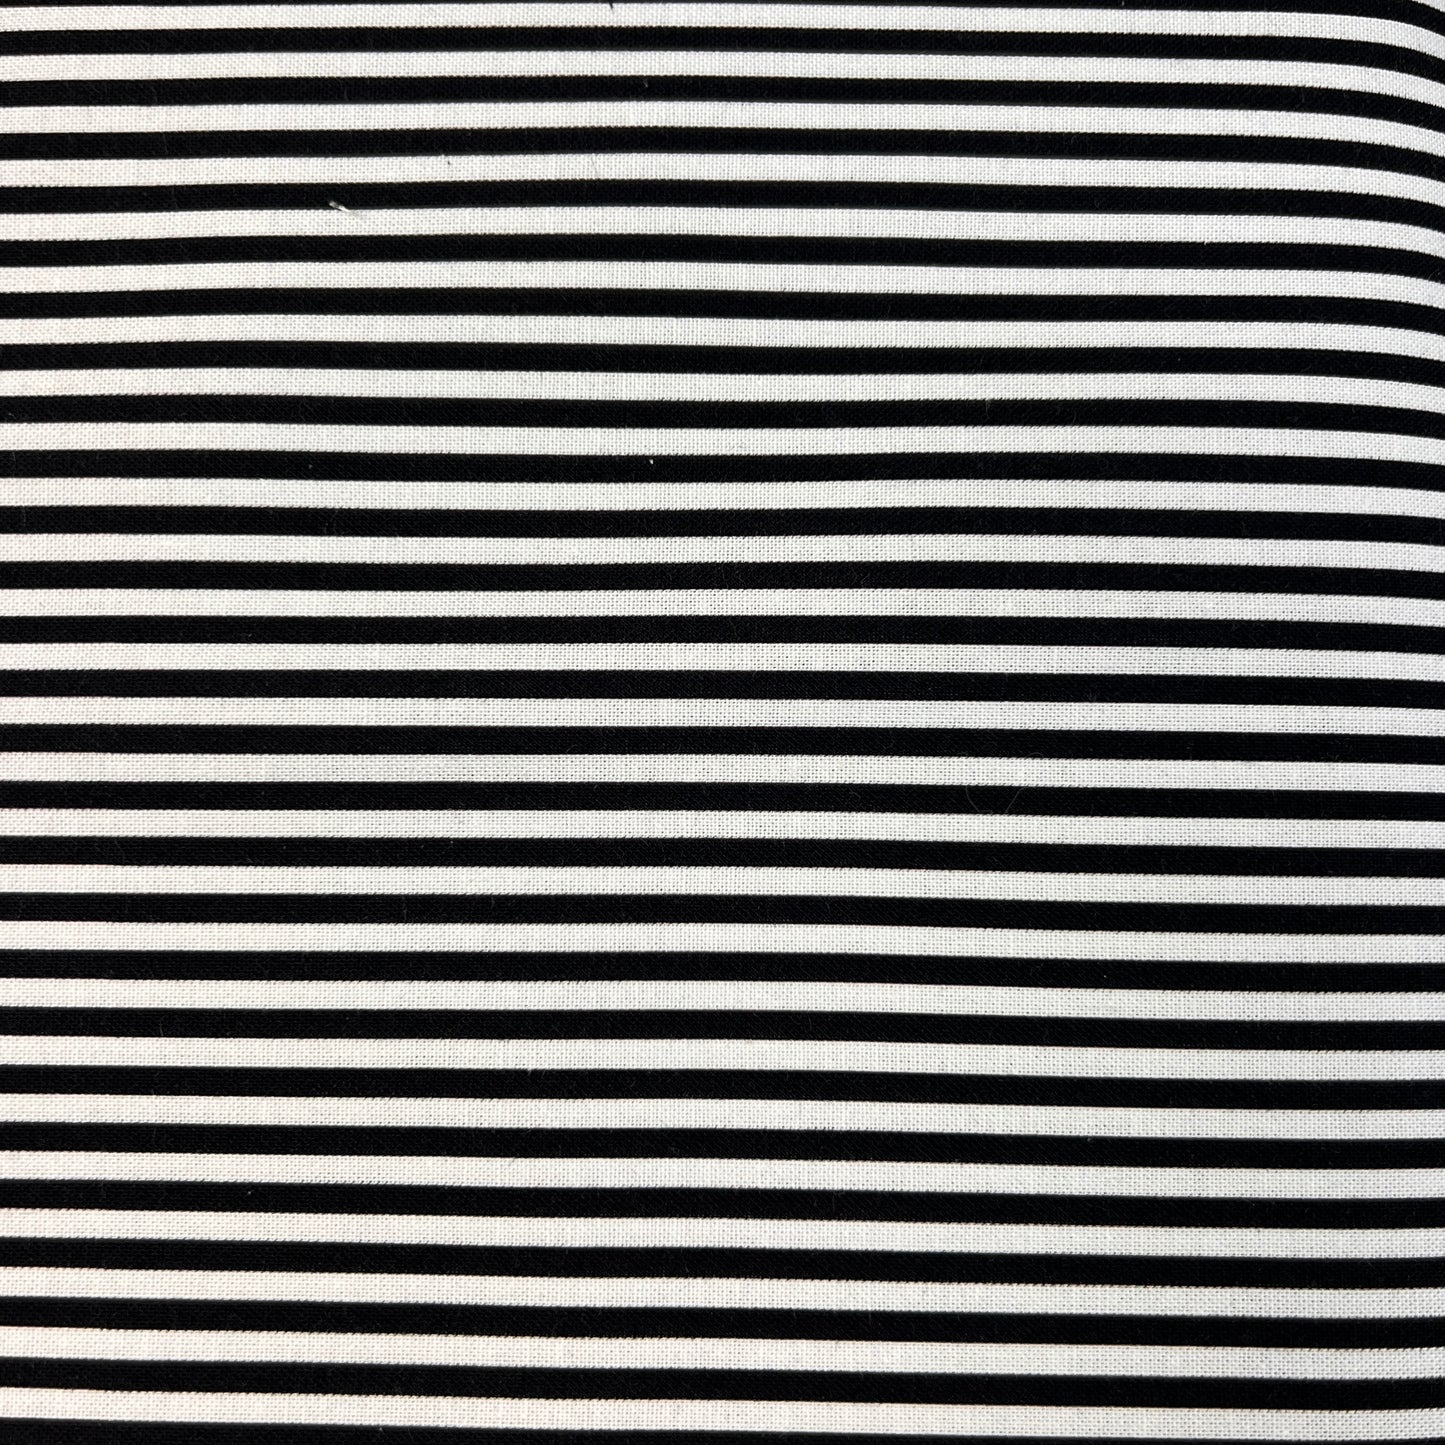 Cotton Prints By The Metre (112cm Wide) - Black & White Stripe